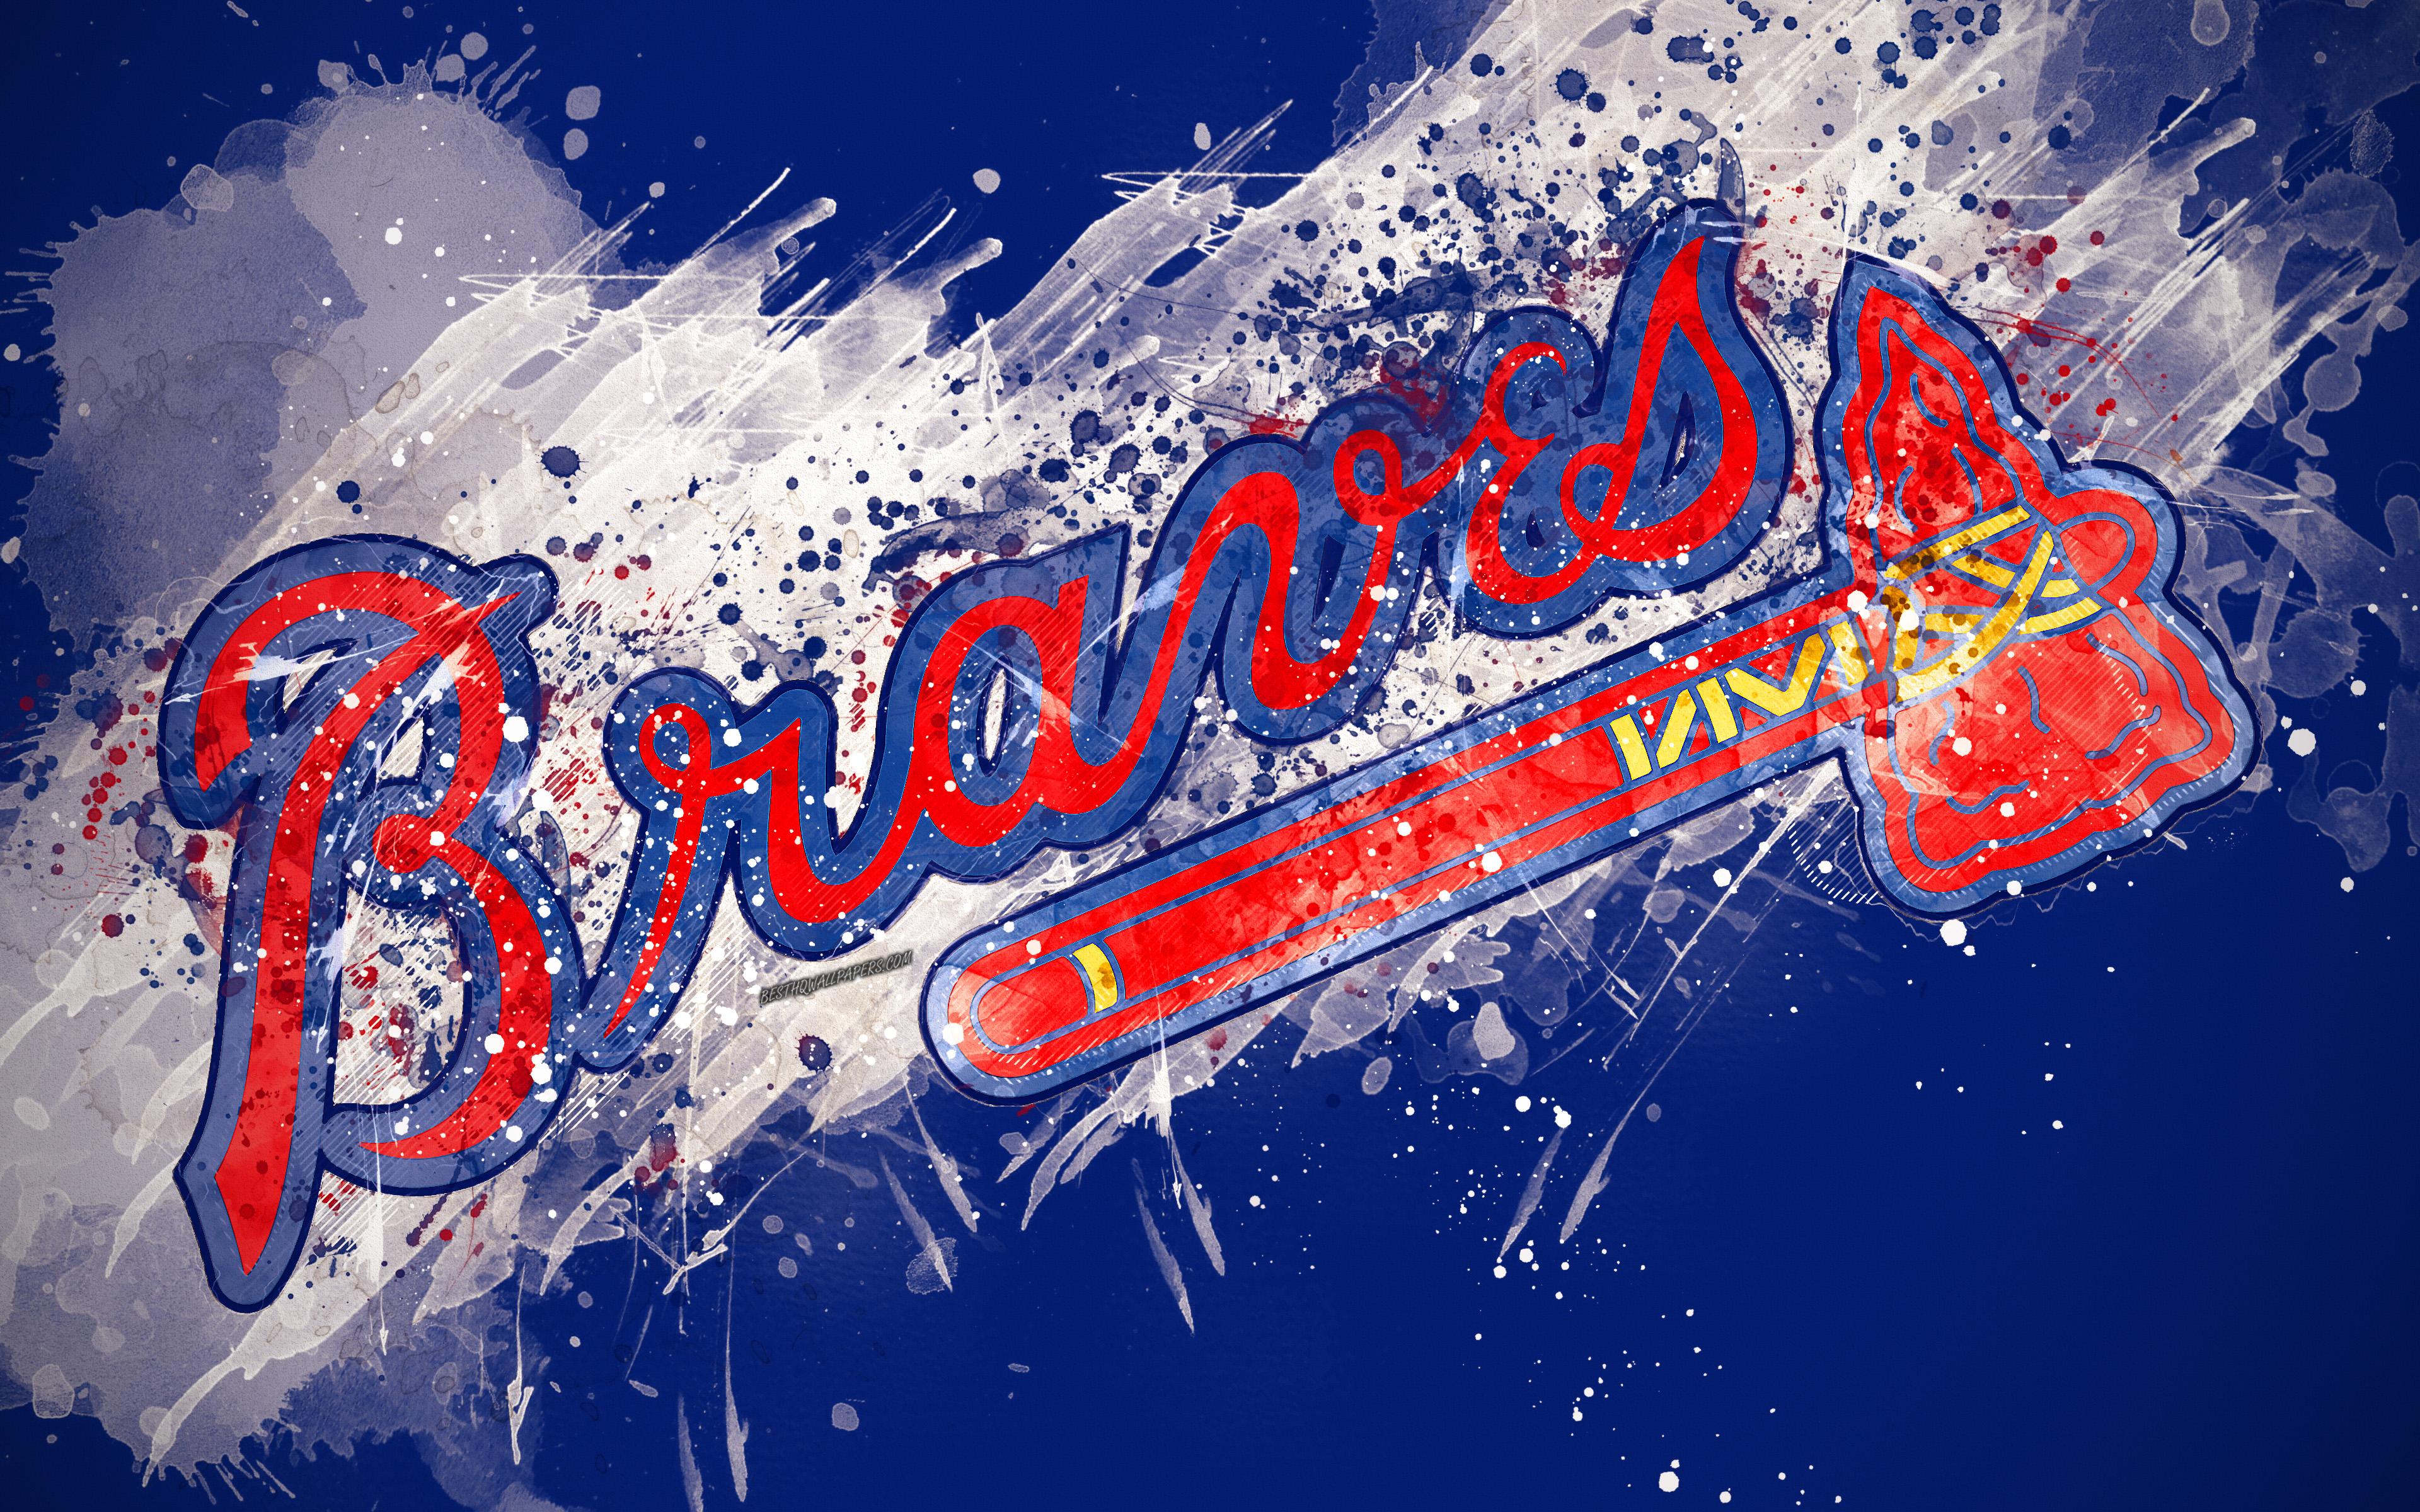 Download wallpaper Atlanta Braves, 4k, grunge art, logo